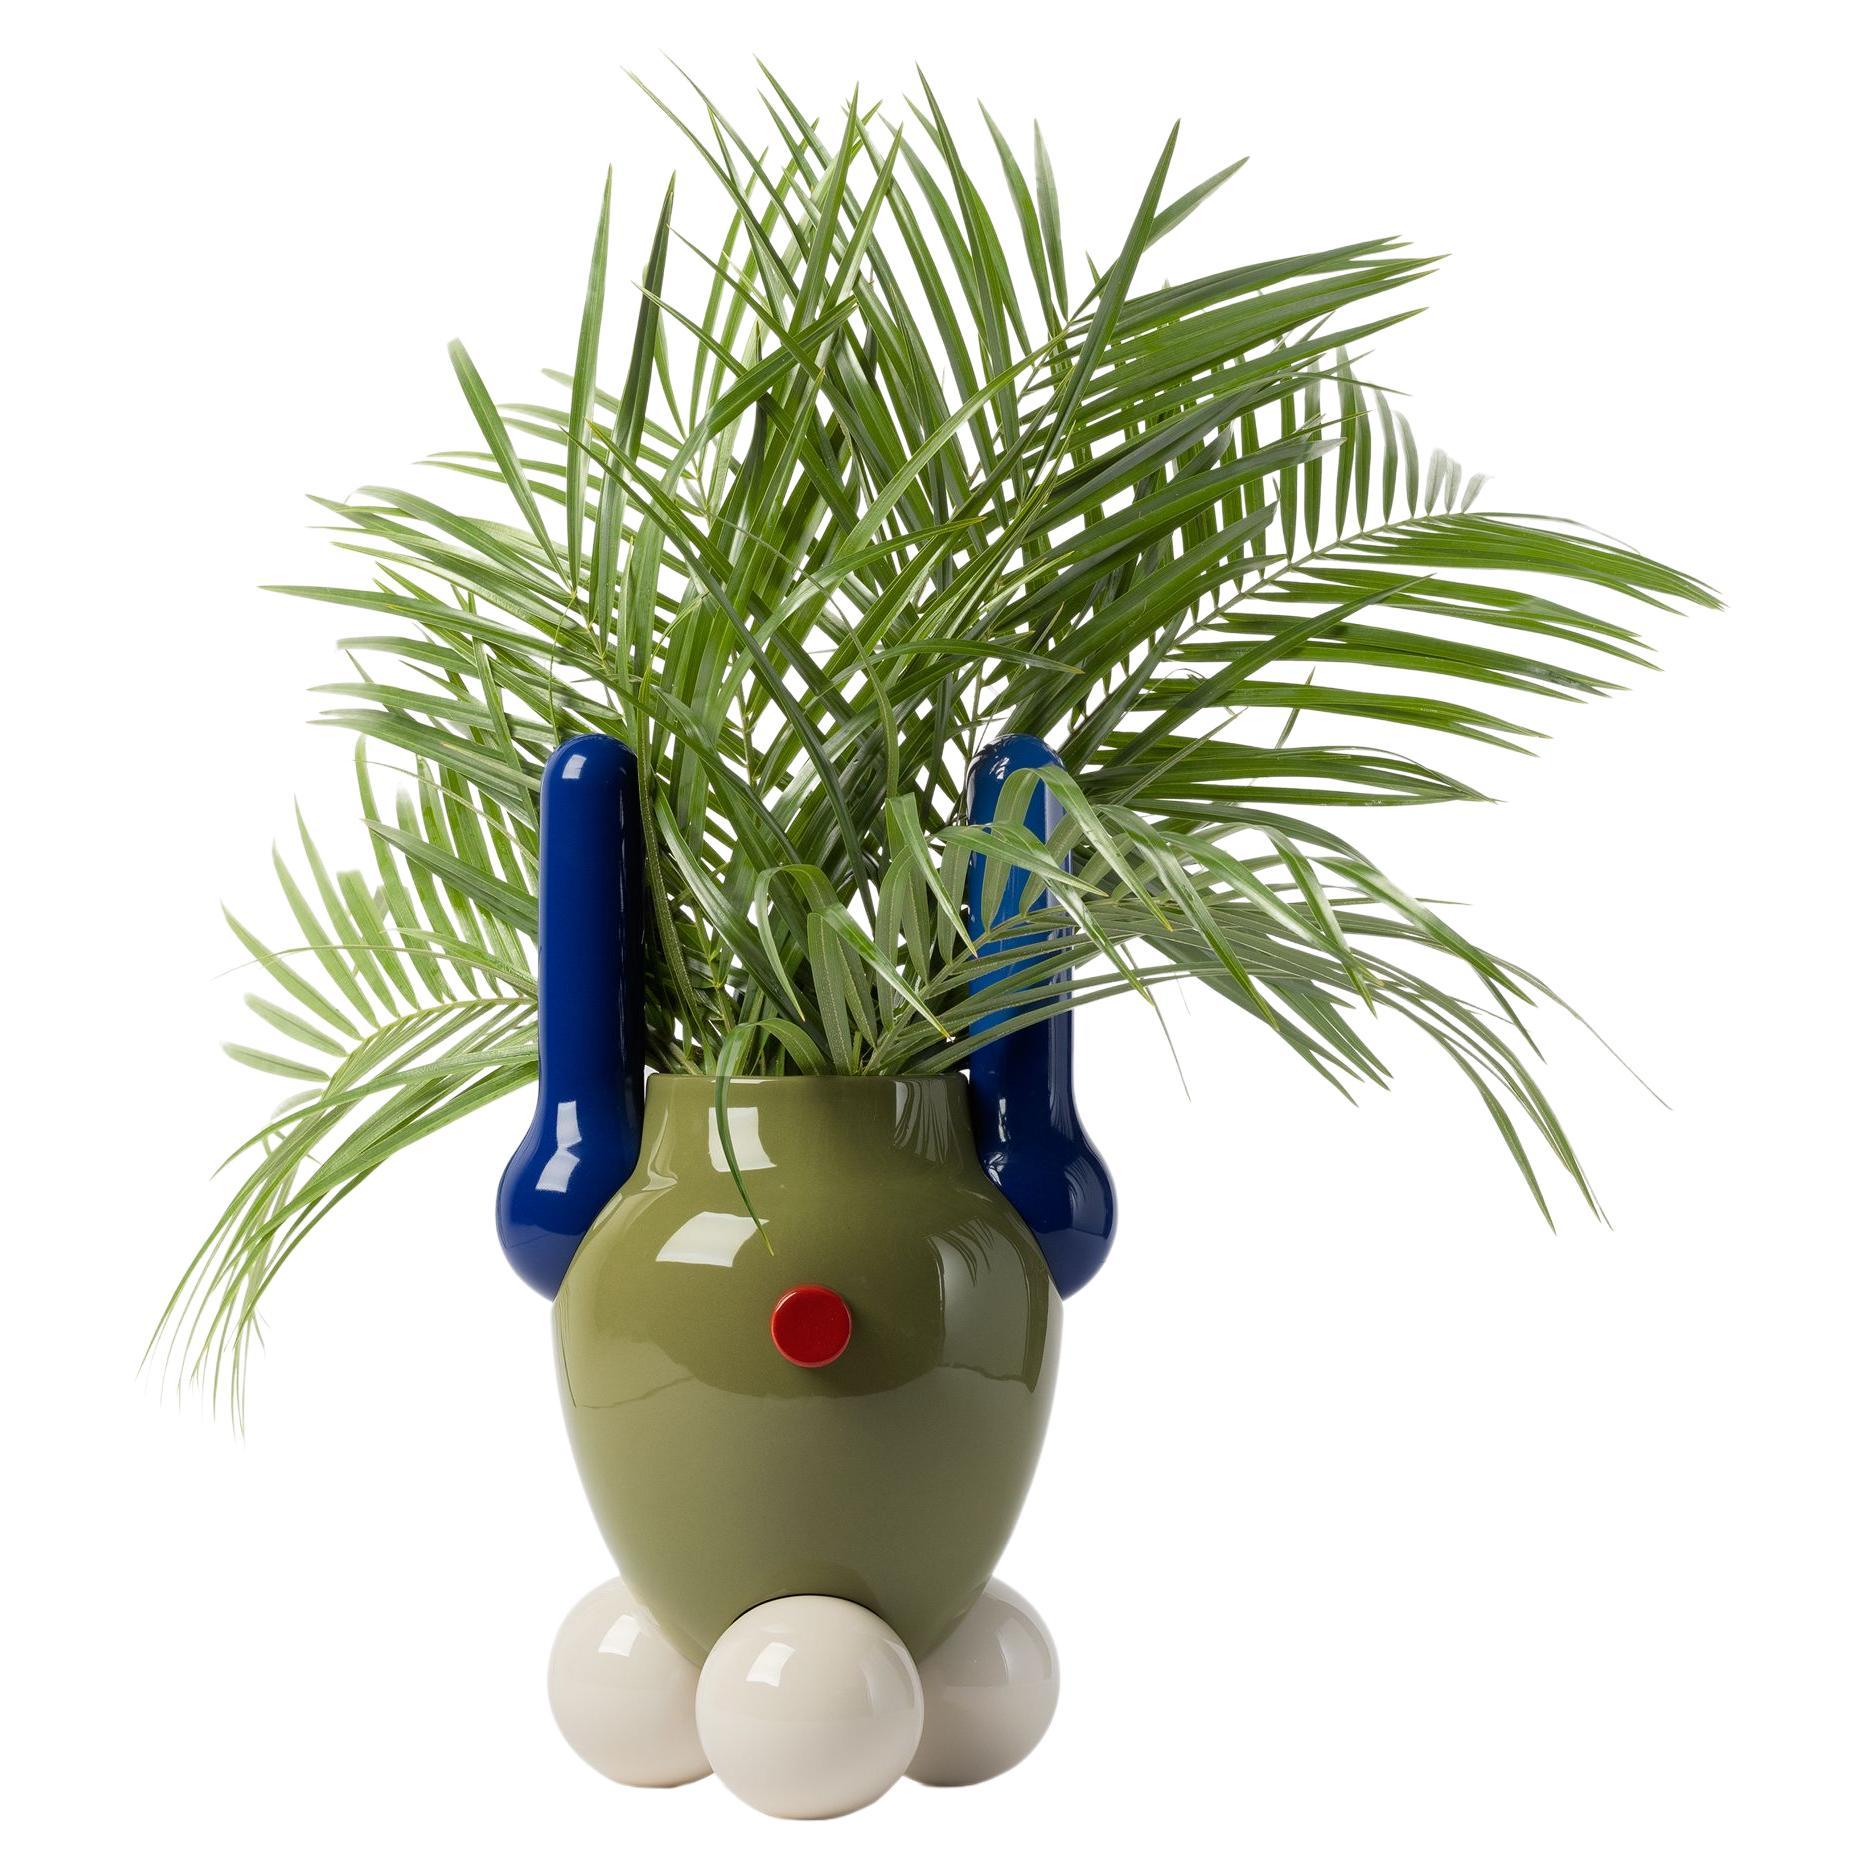 Vase explorateur contemporain en céramique émaillée n° 1 de Jaime Hayon, vert, bleu blanc